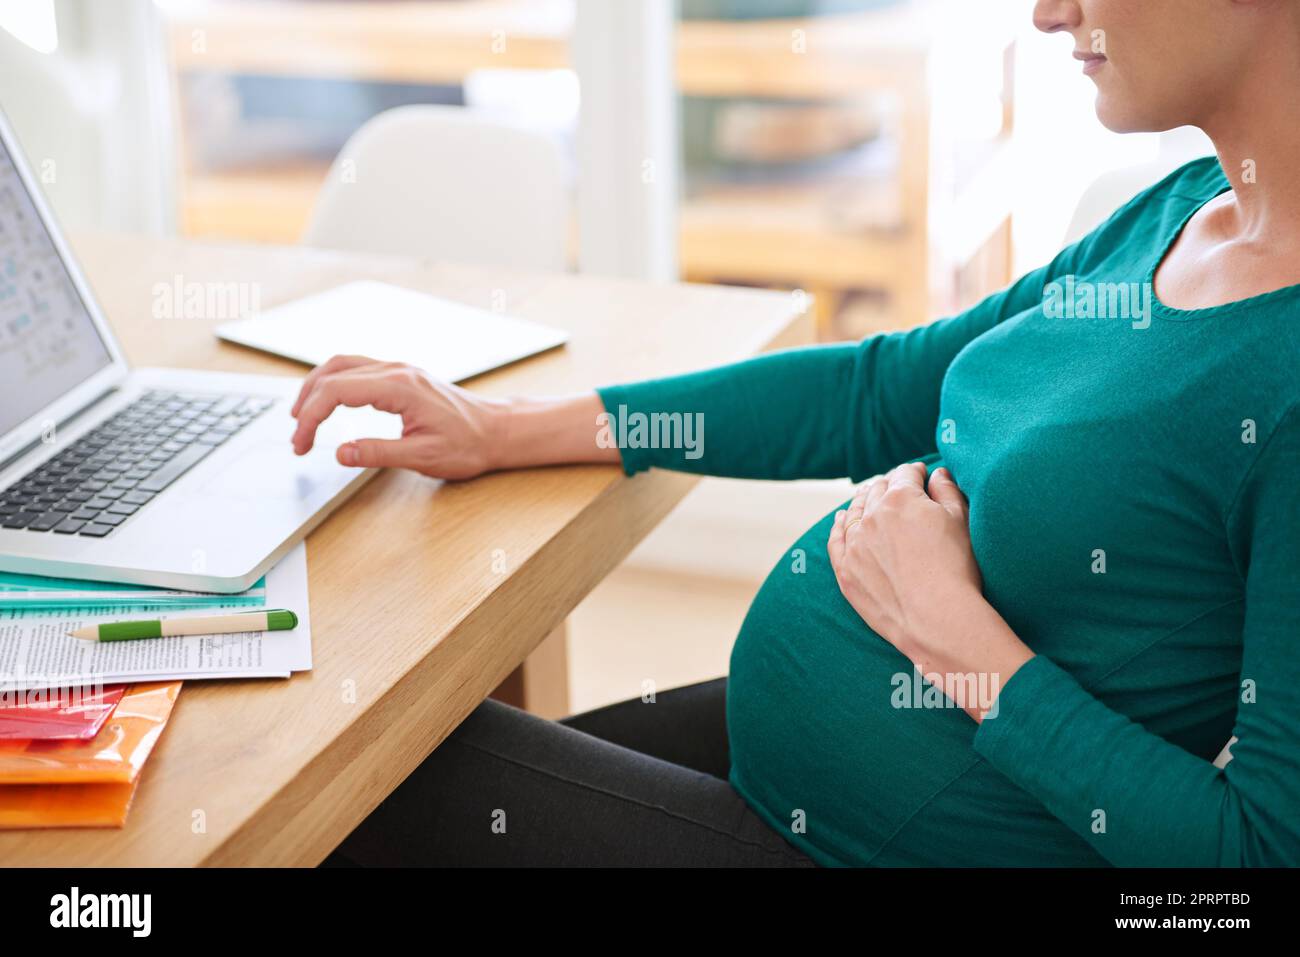 Raccogliere qualche consiglio genitorialità online. Una donna incinta che usa il suo notebook a casa. Foto Stock